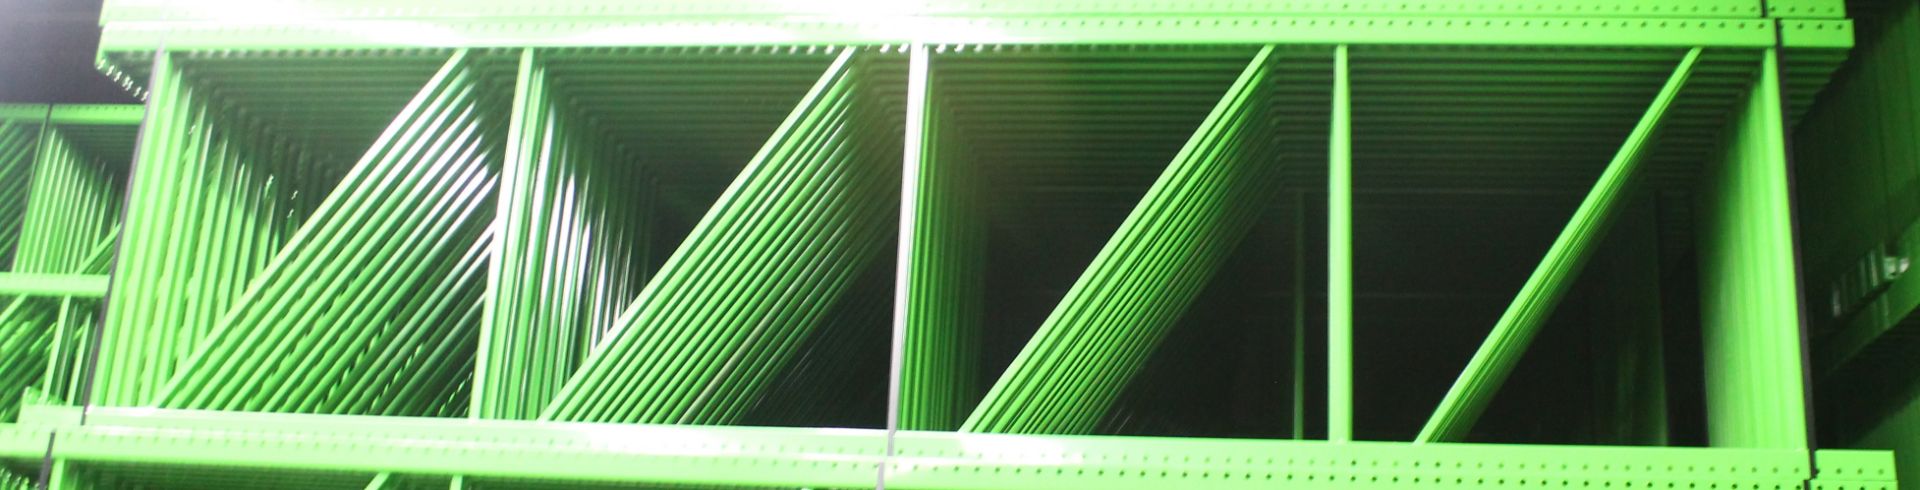 NEW 30 PCS OF TEARDROP UPRIGHT. SIZE 16'H X 48"D, 3"X 3" GREEN